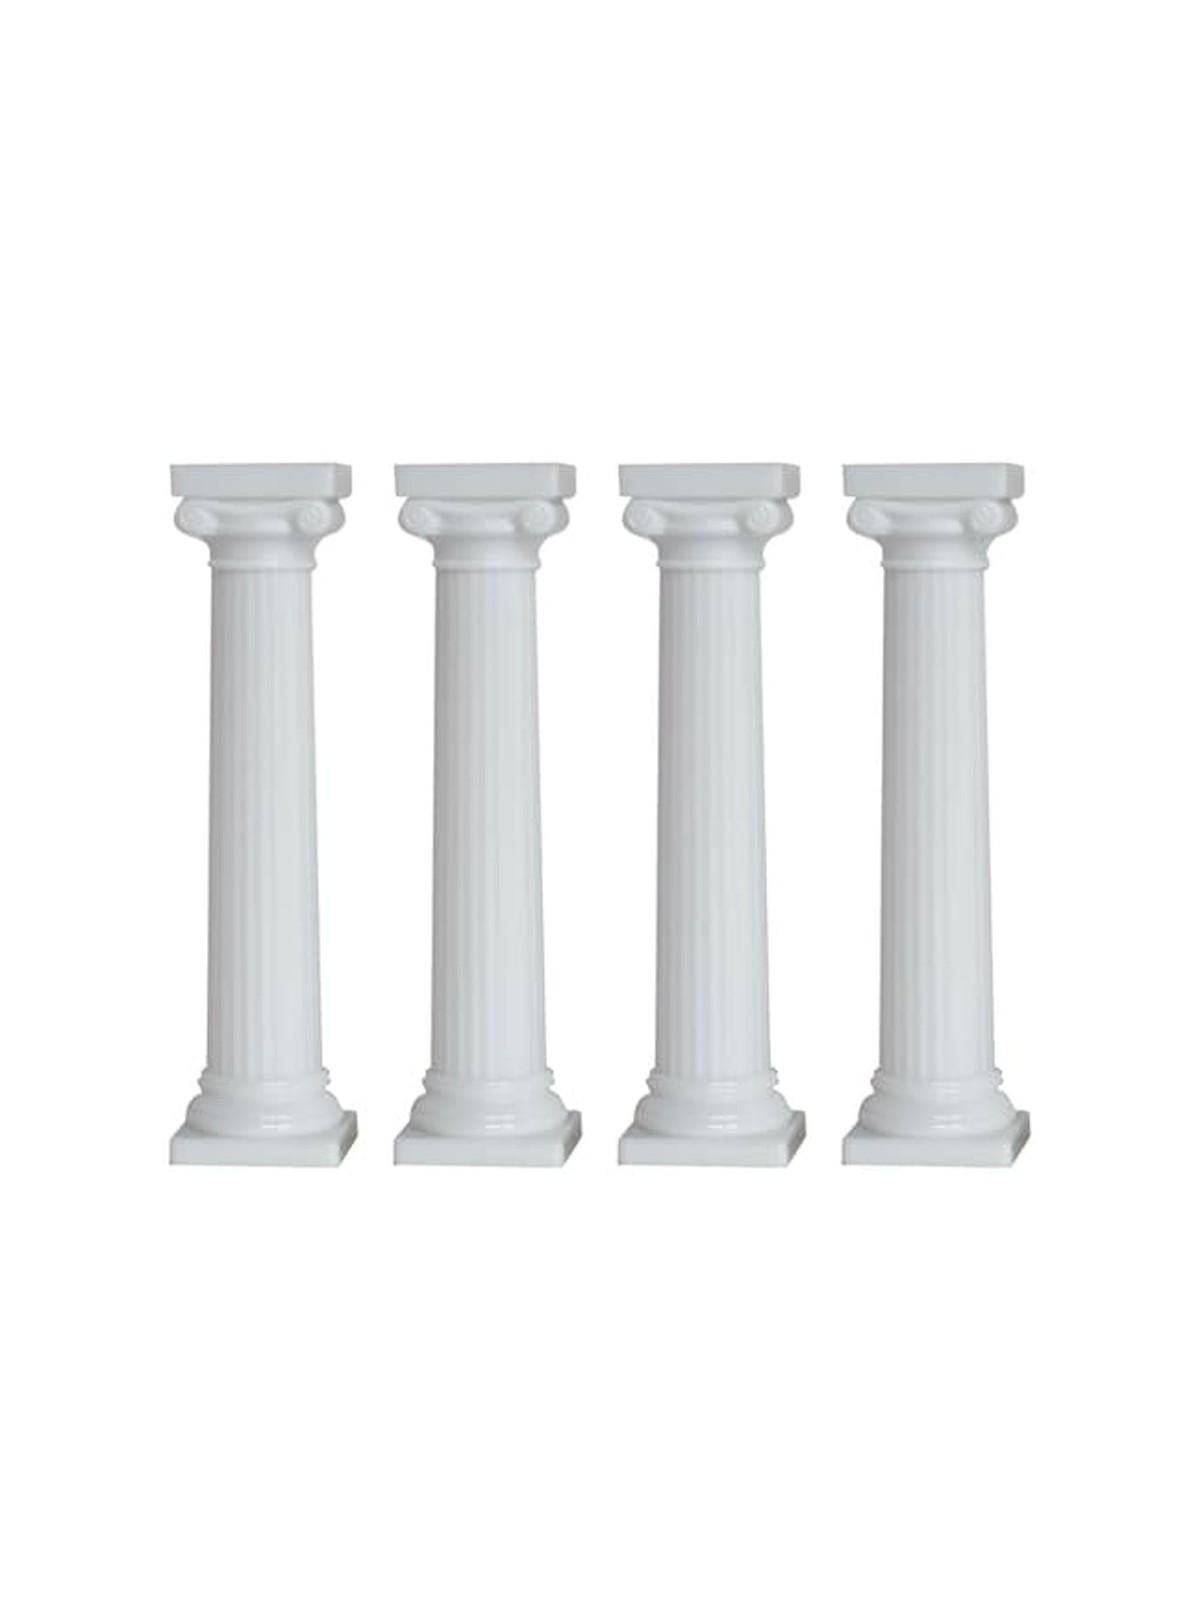 Caketools - Greek columns - 4pcs 13cm